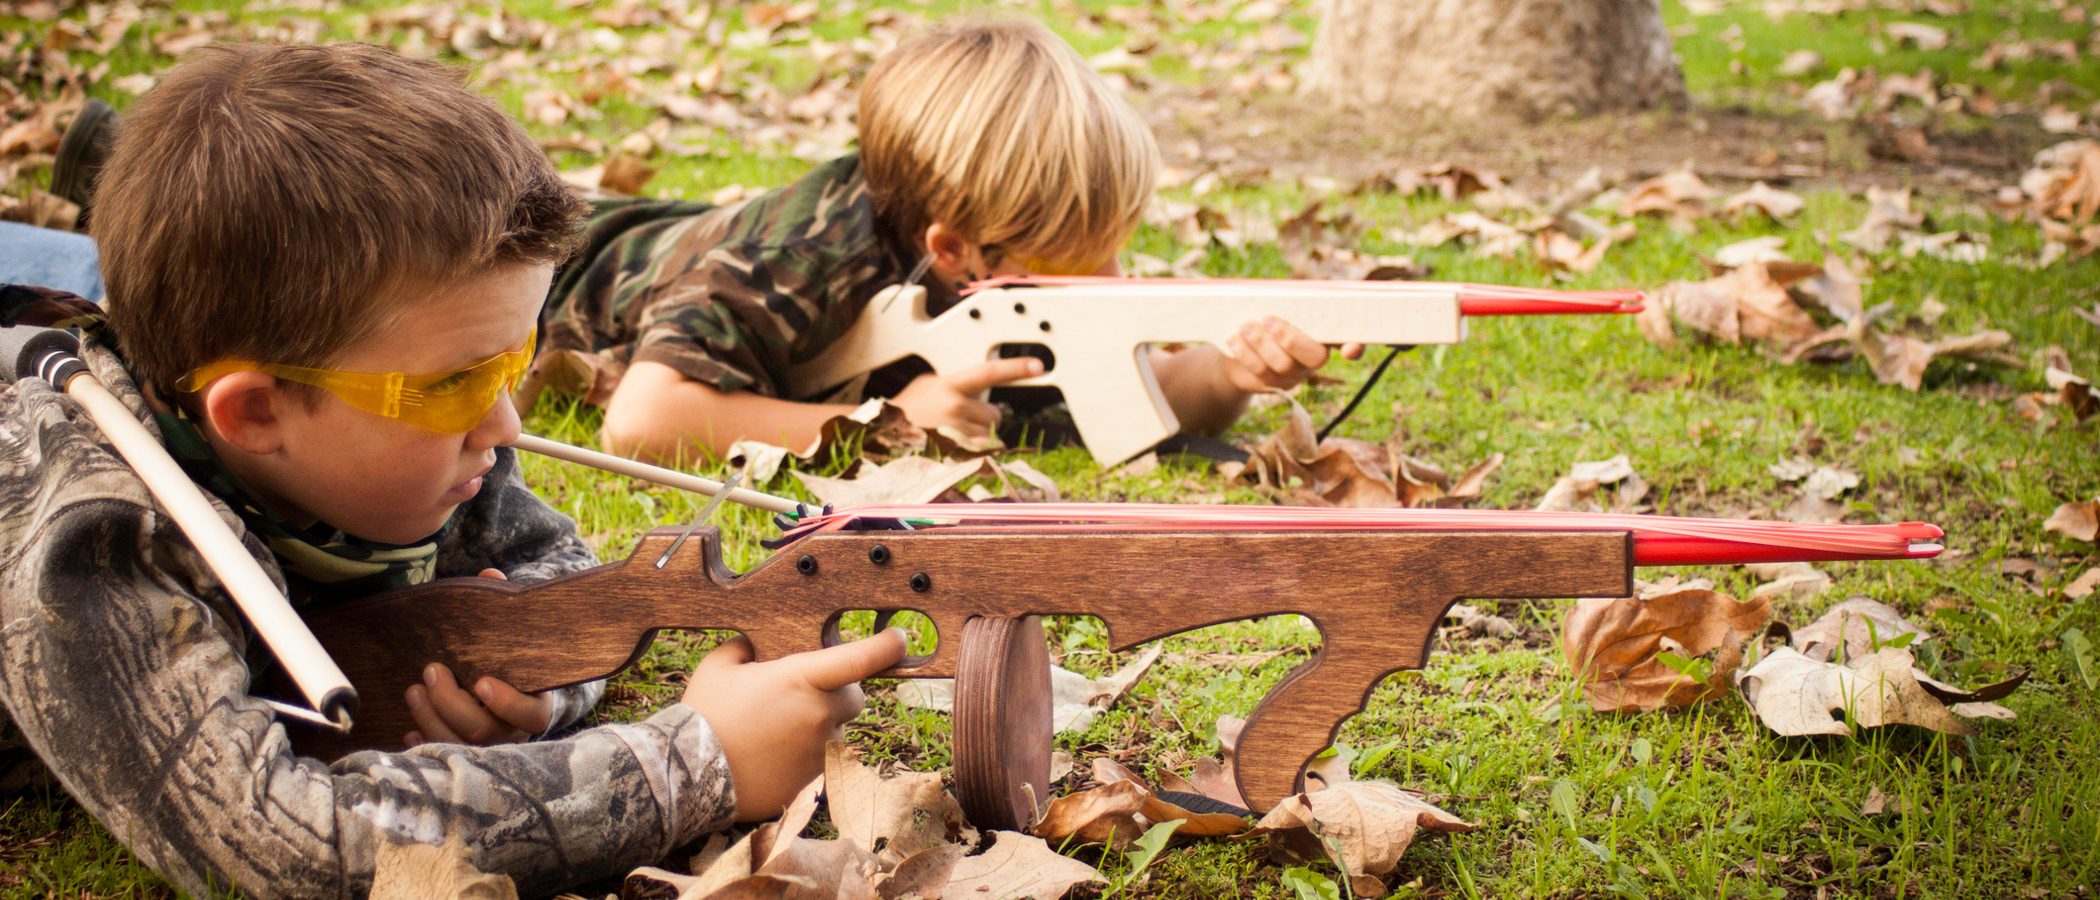 Pistolas y juguetes bélicos en niños, ¿a favor o en contra?